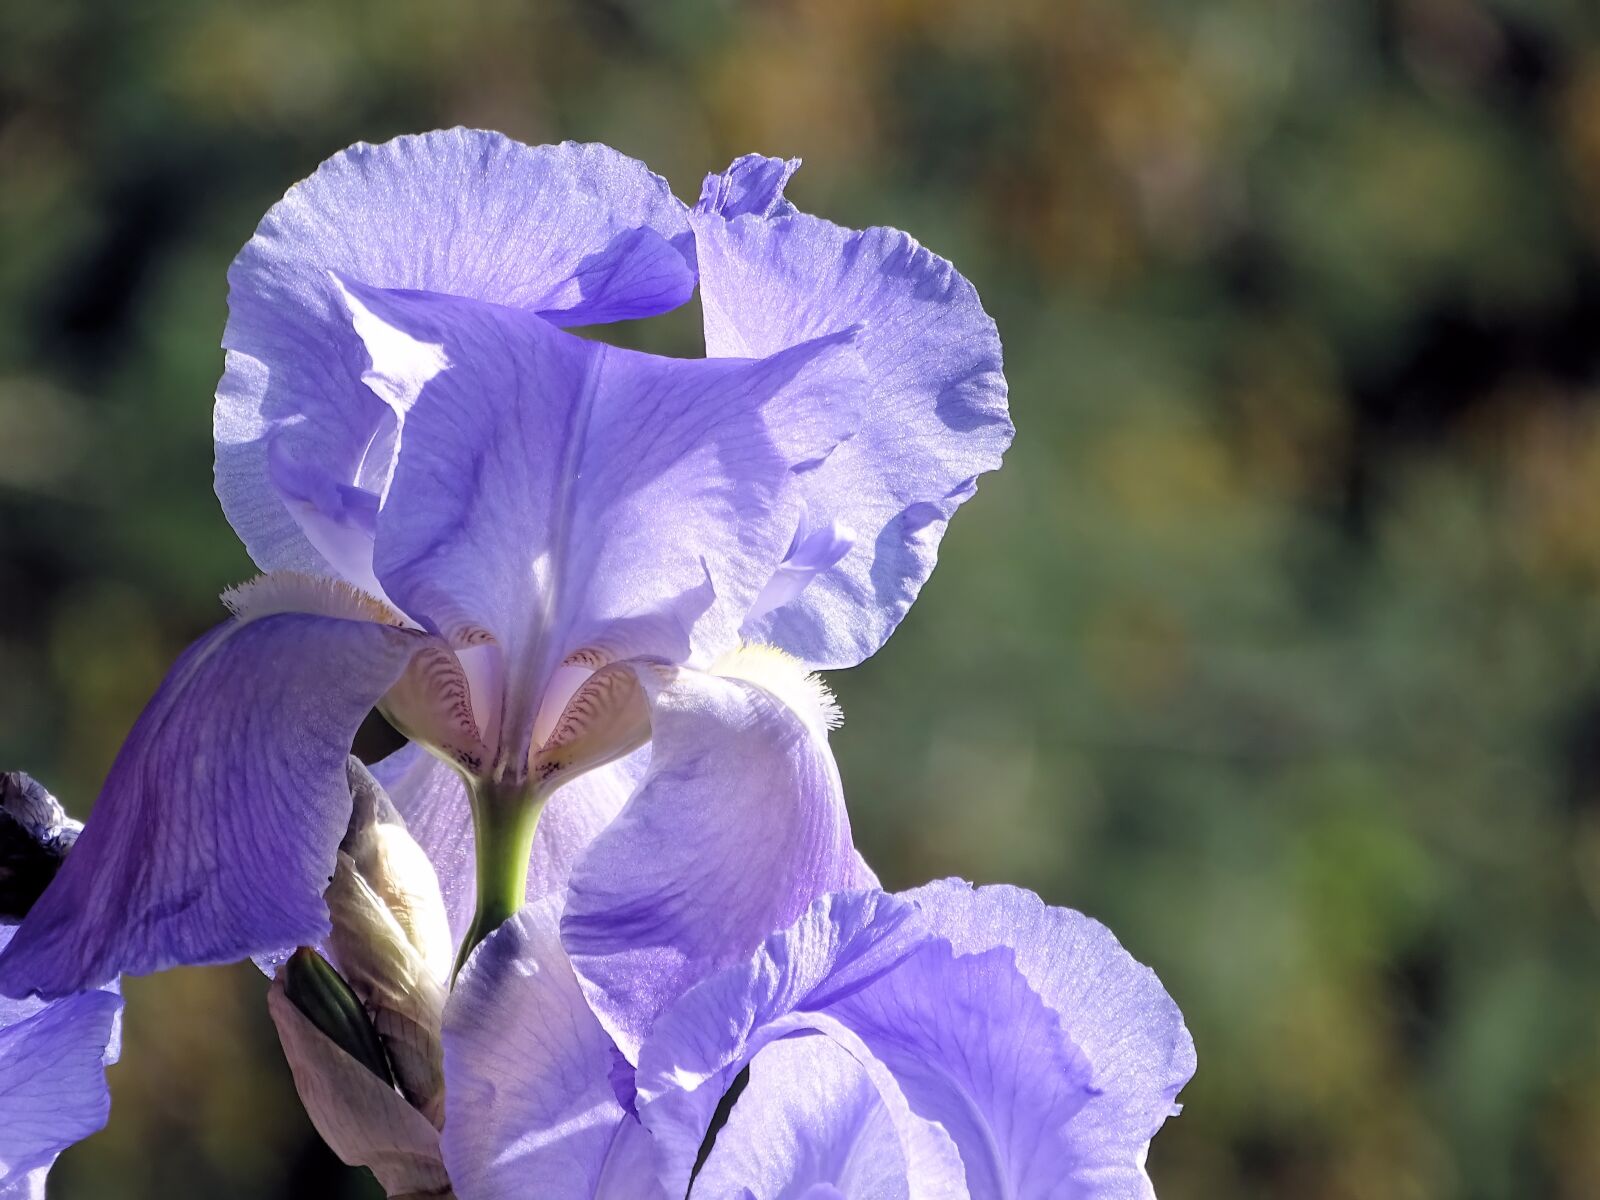 Sony Cyber-shot DSC-HX400V sample photo. Iris, flower, violet photography